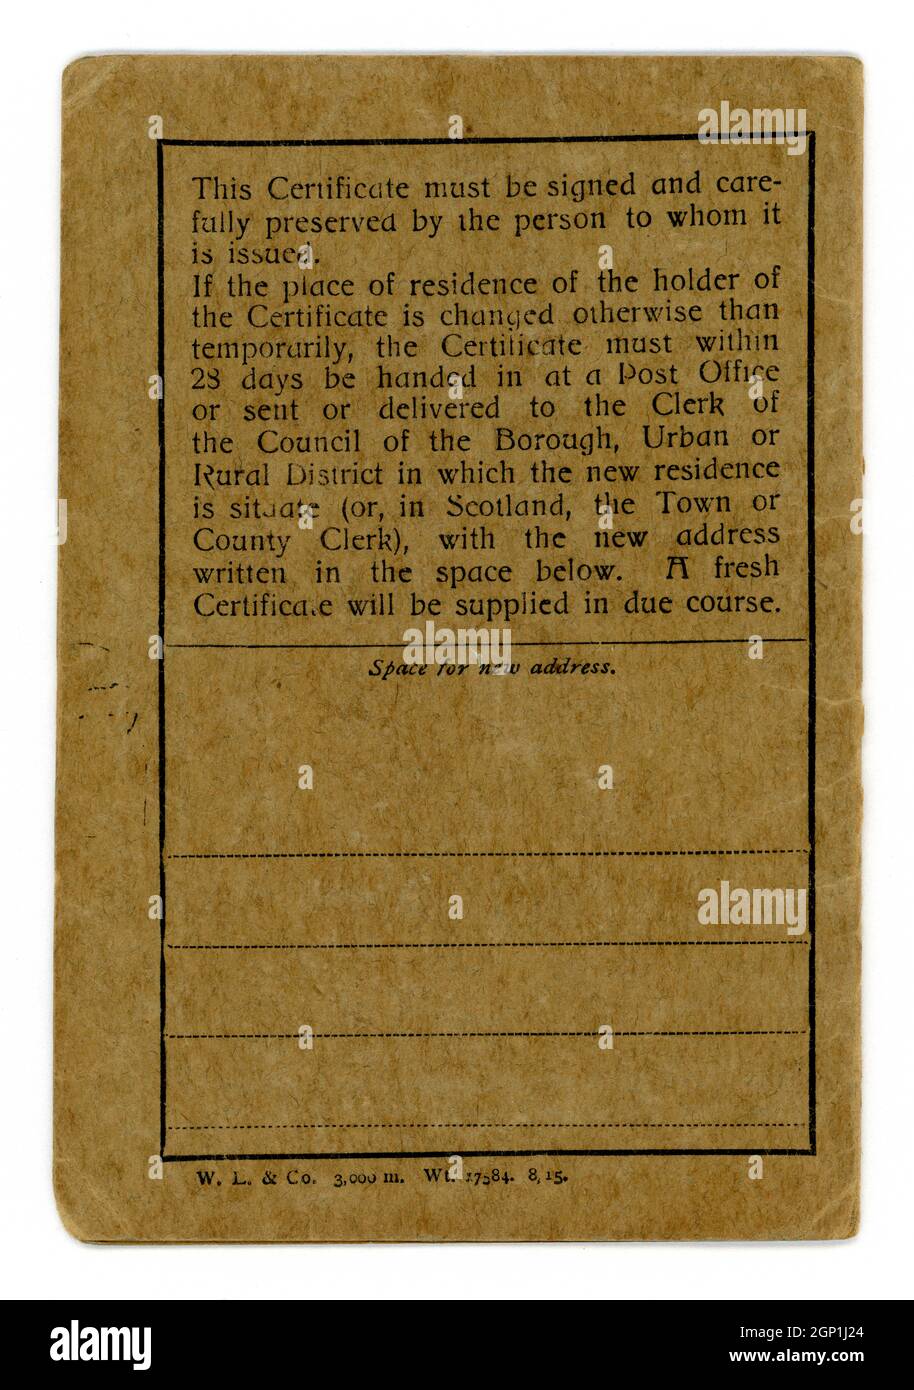 Première Guerre mondiale National Registration Act 1915 carte appartenant à George Spiers Smith, adjoint principal, 38. Estampillé - Conseil de district urbain de Whitley et Monkseeson, Northumberland par un agent de recrutement 0n 6 décembre 1916 Banque D'Images